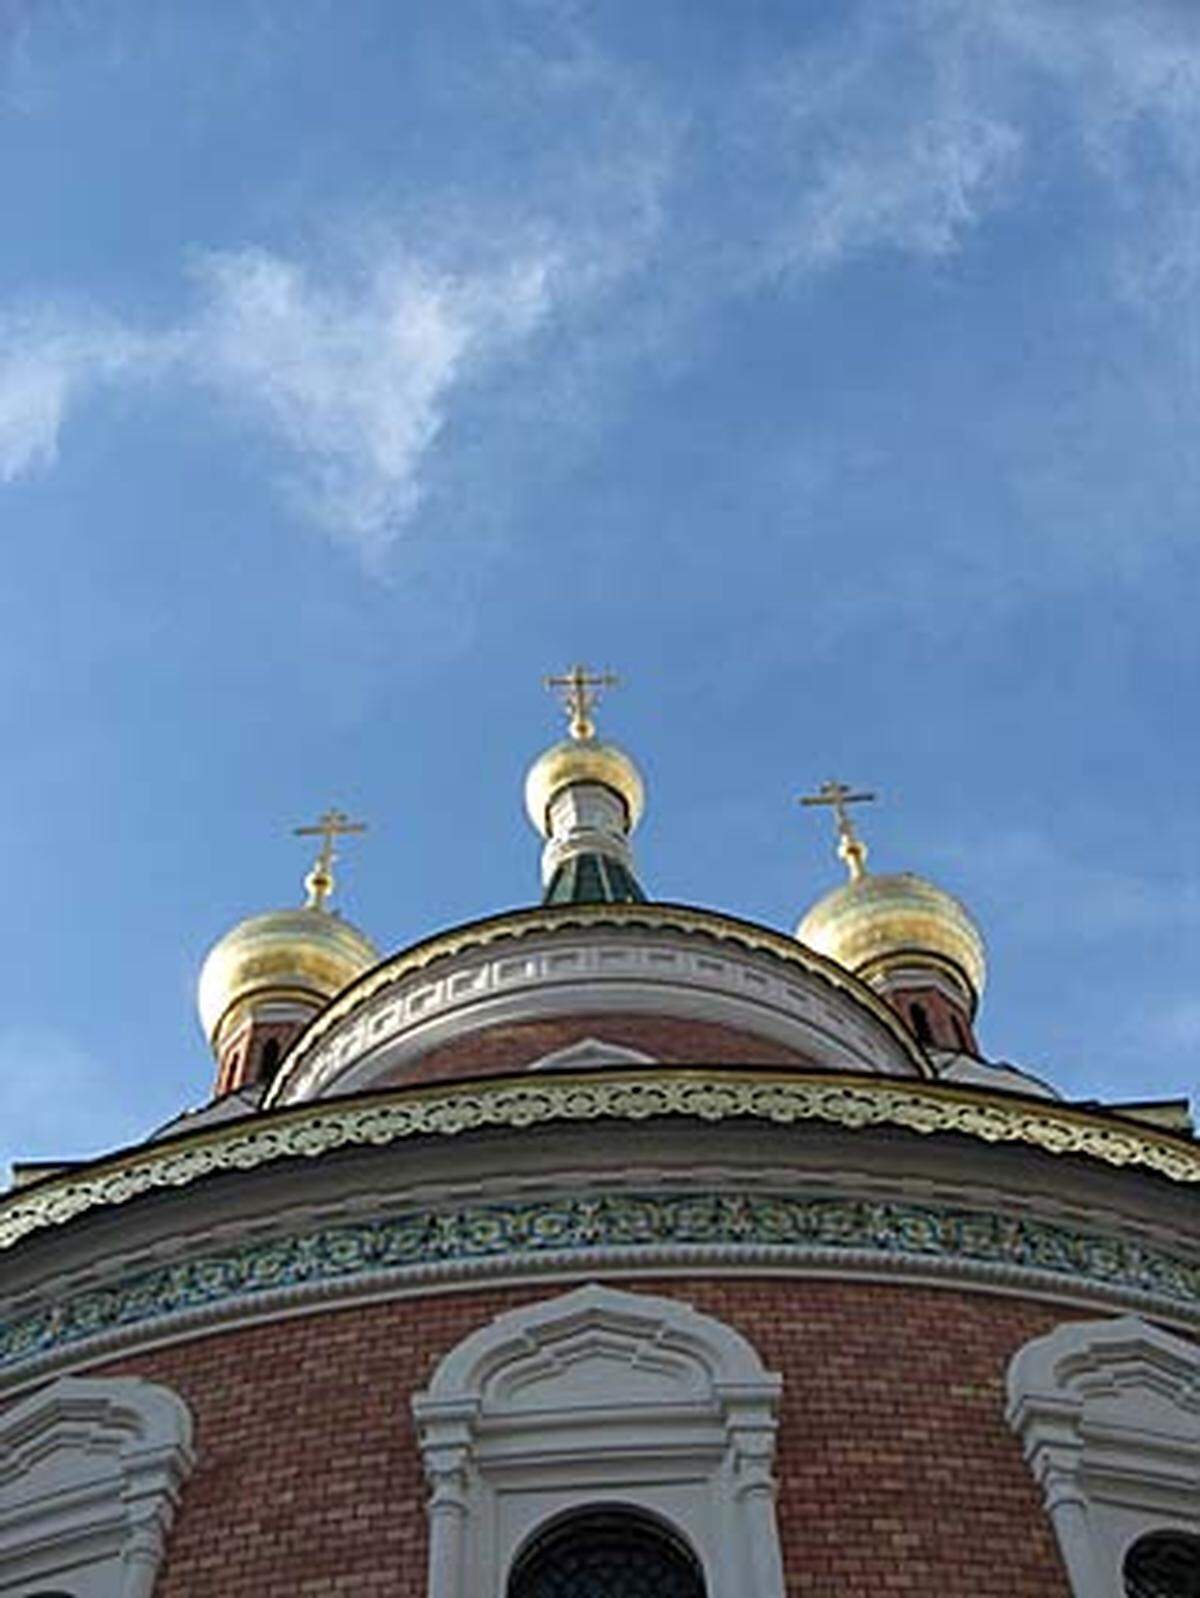 Am 21. Dezember hätte der Moskauer Patriarch Aleksij II. gemeinsam mit 14 Bischöfen und 20 Priestern die Liturgie zur Wiedereinweihung zelebrieren sollen. Leider ist er am 5. Dezember verstorben.